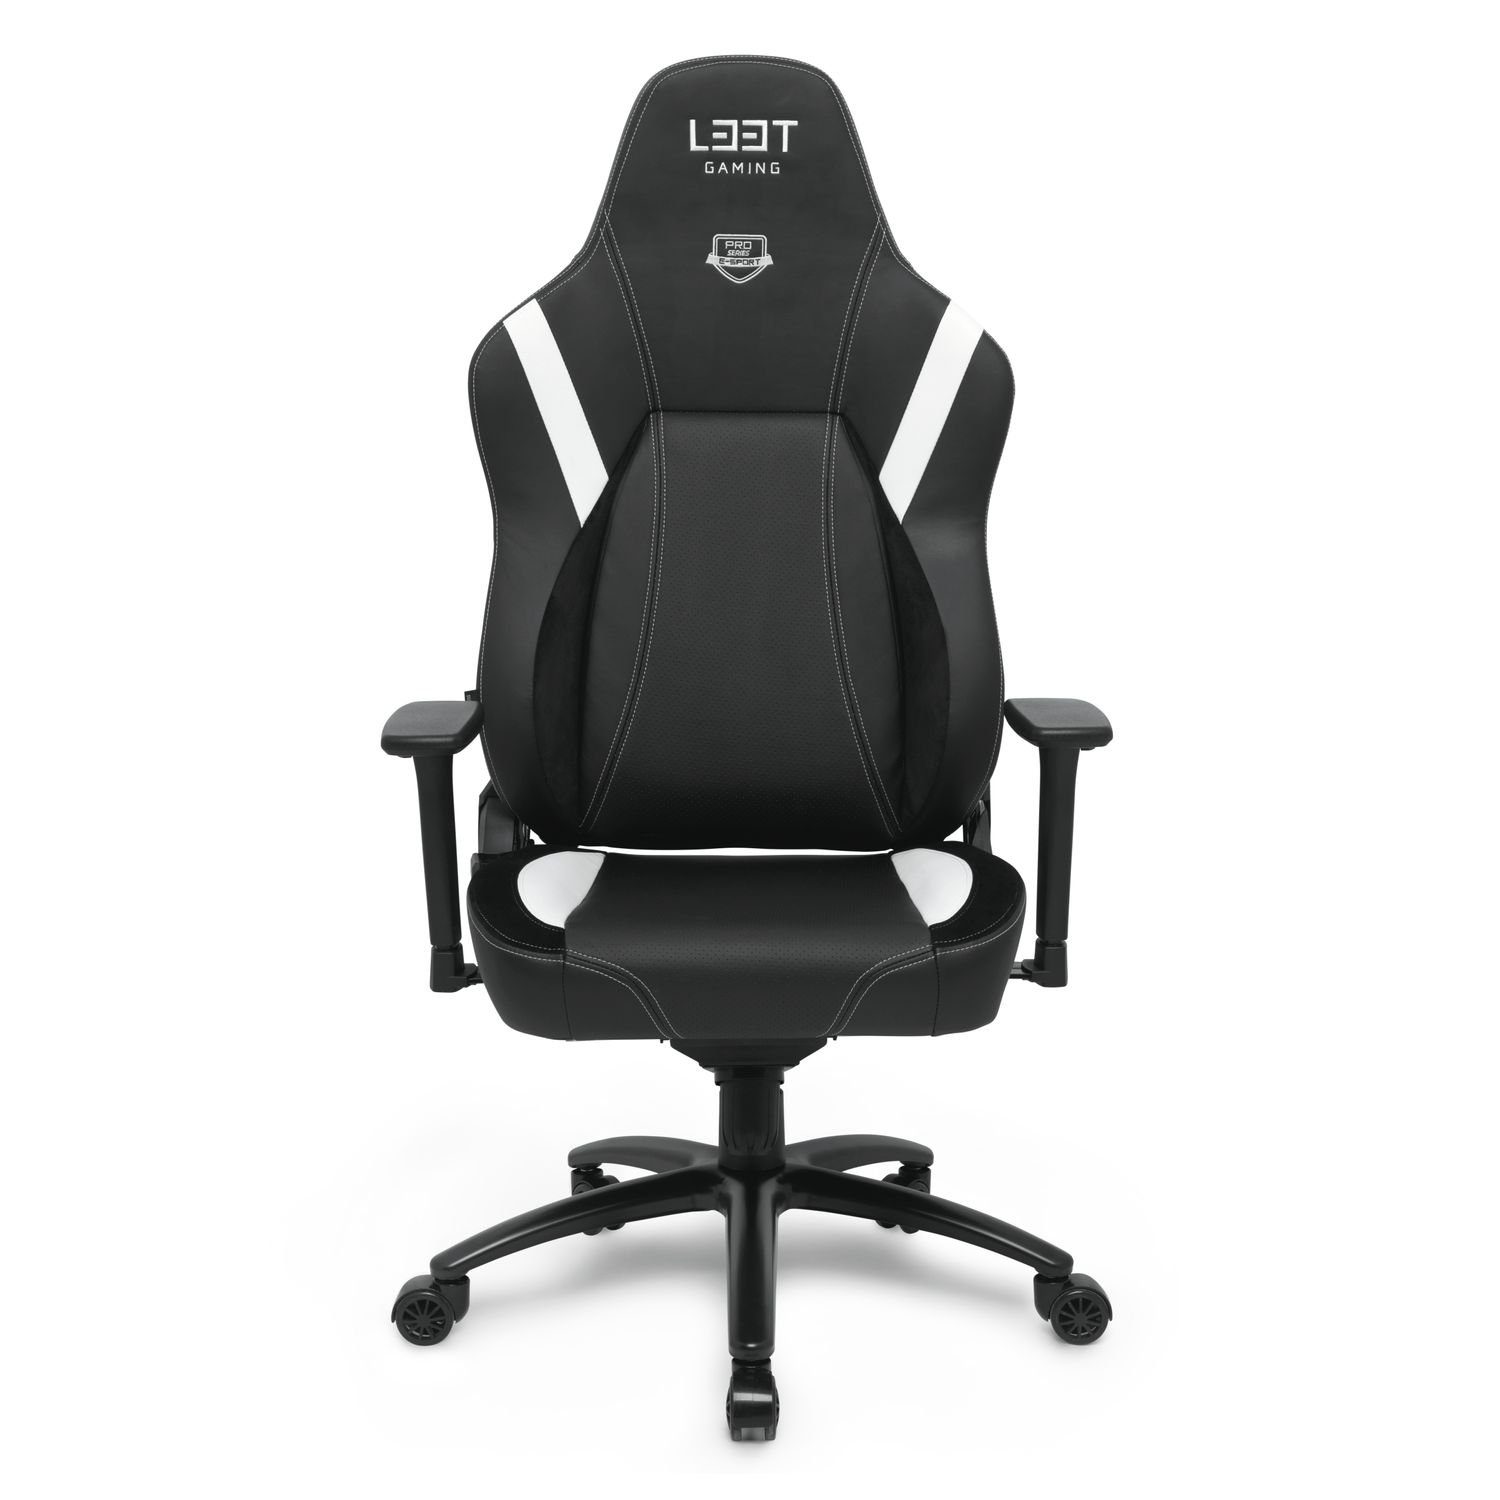 L33T Gaming-Stuhl E-SPORT PRO SUPERIOR, XL GAMING Stuhl XL / Büro Stuhl XL (kein Set), Einstellbare Rücken-/ und Armlehne